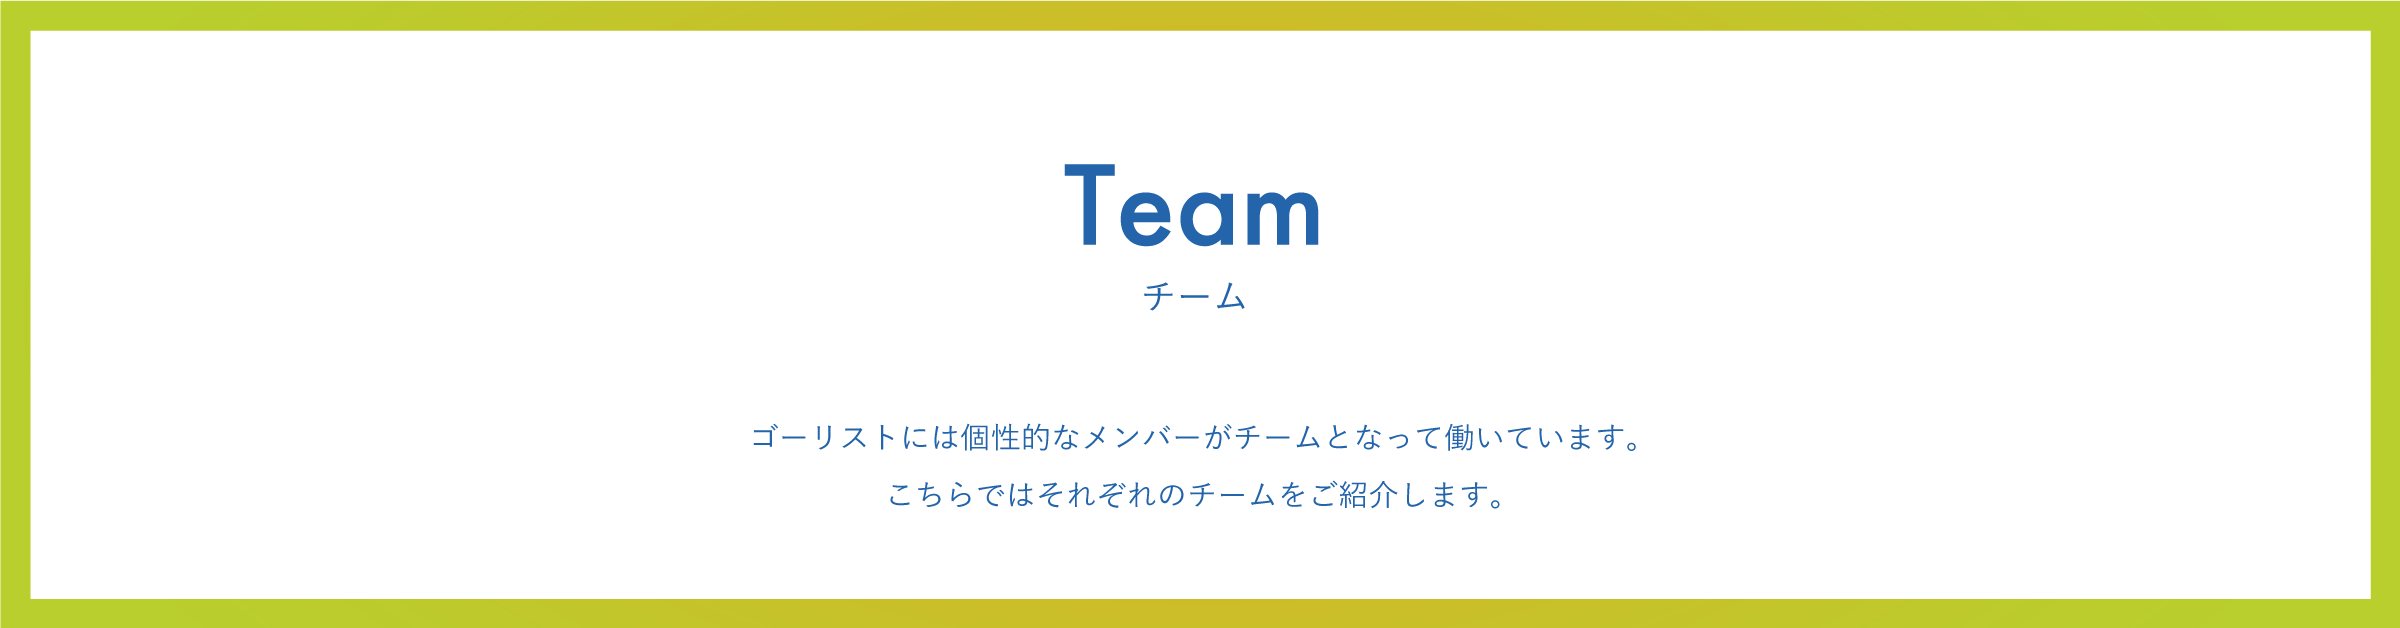 member_team